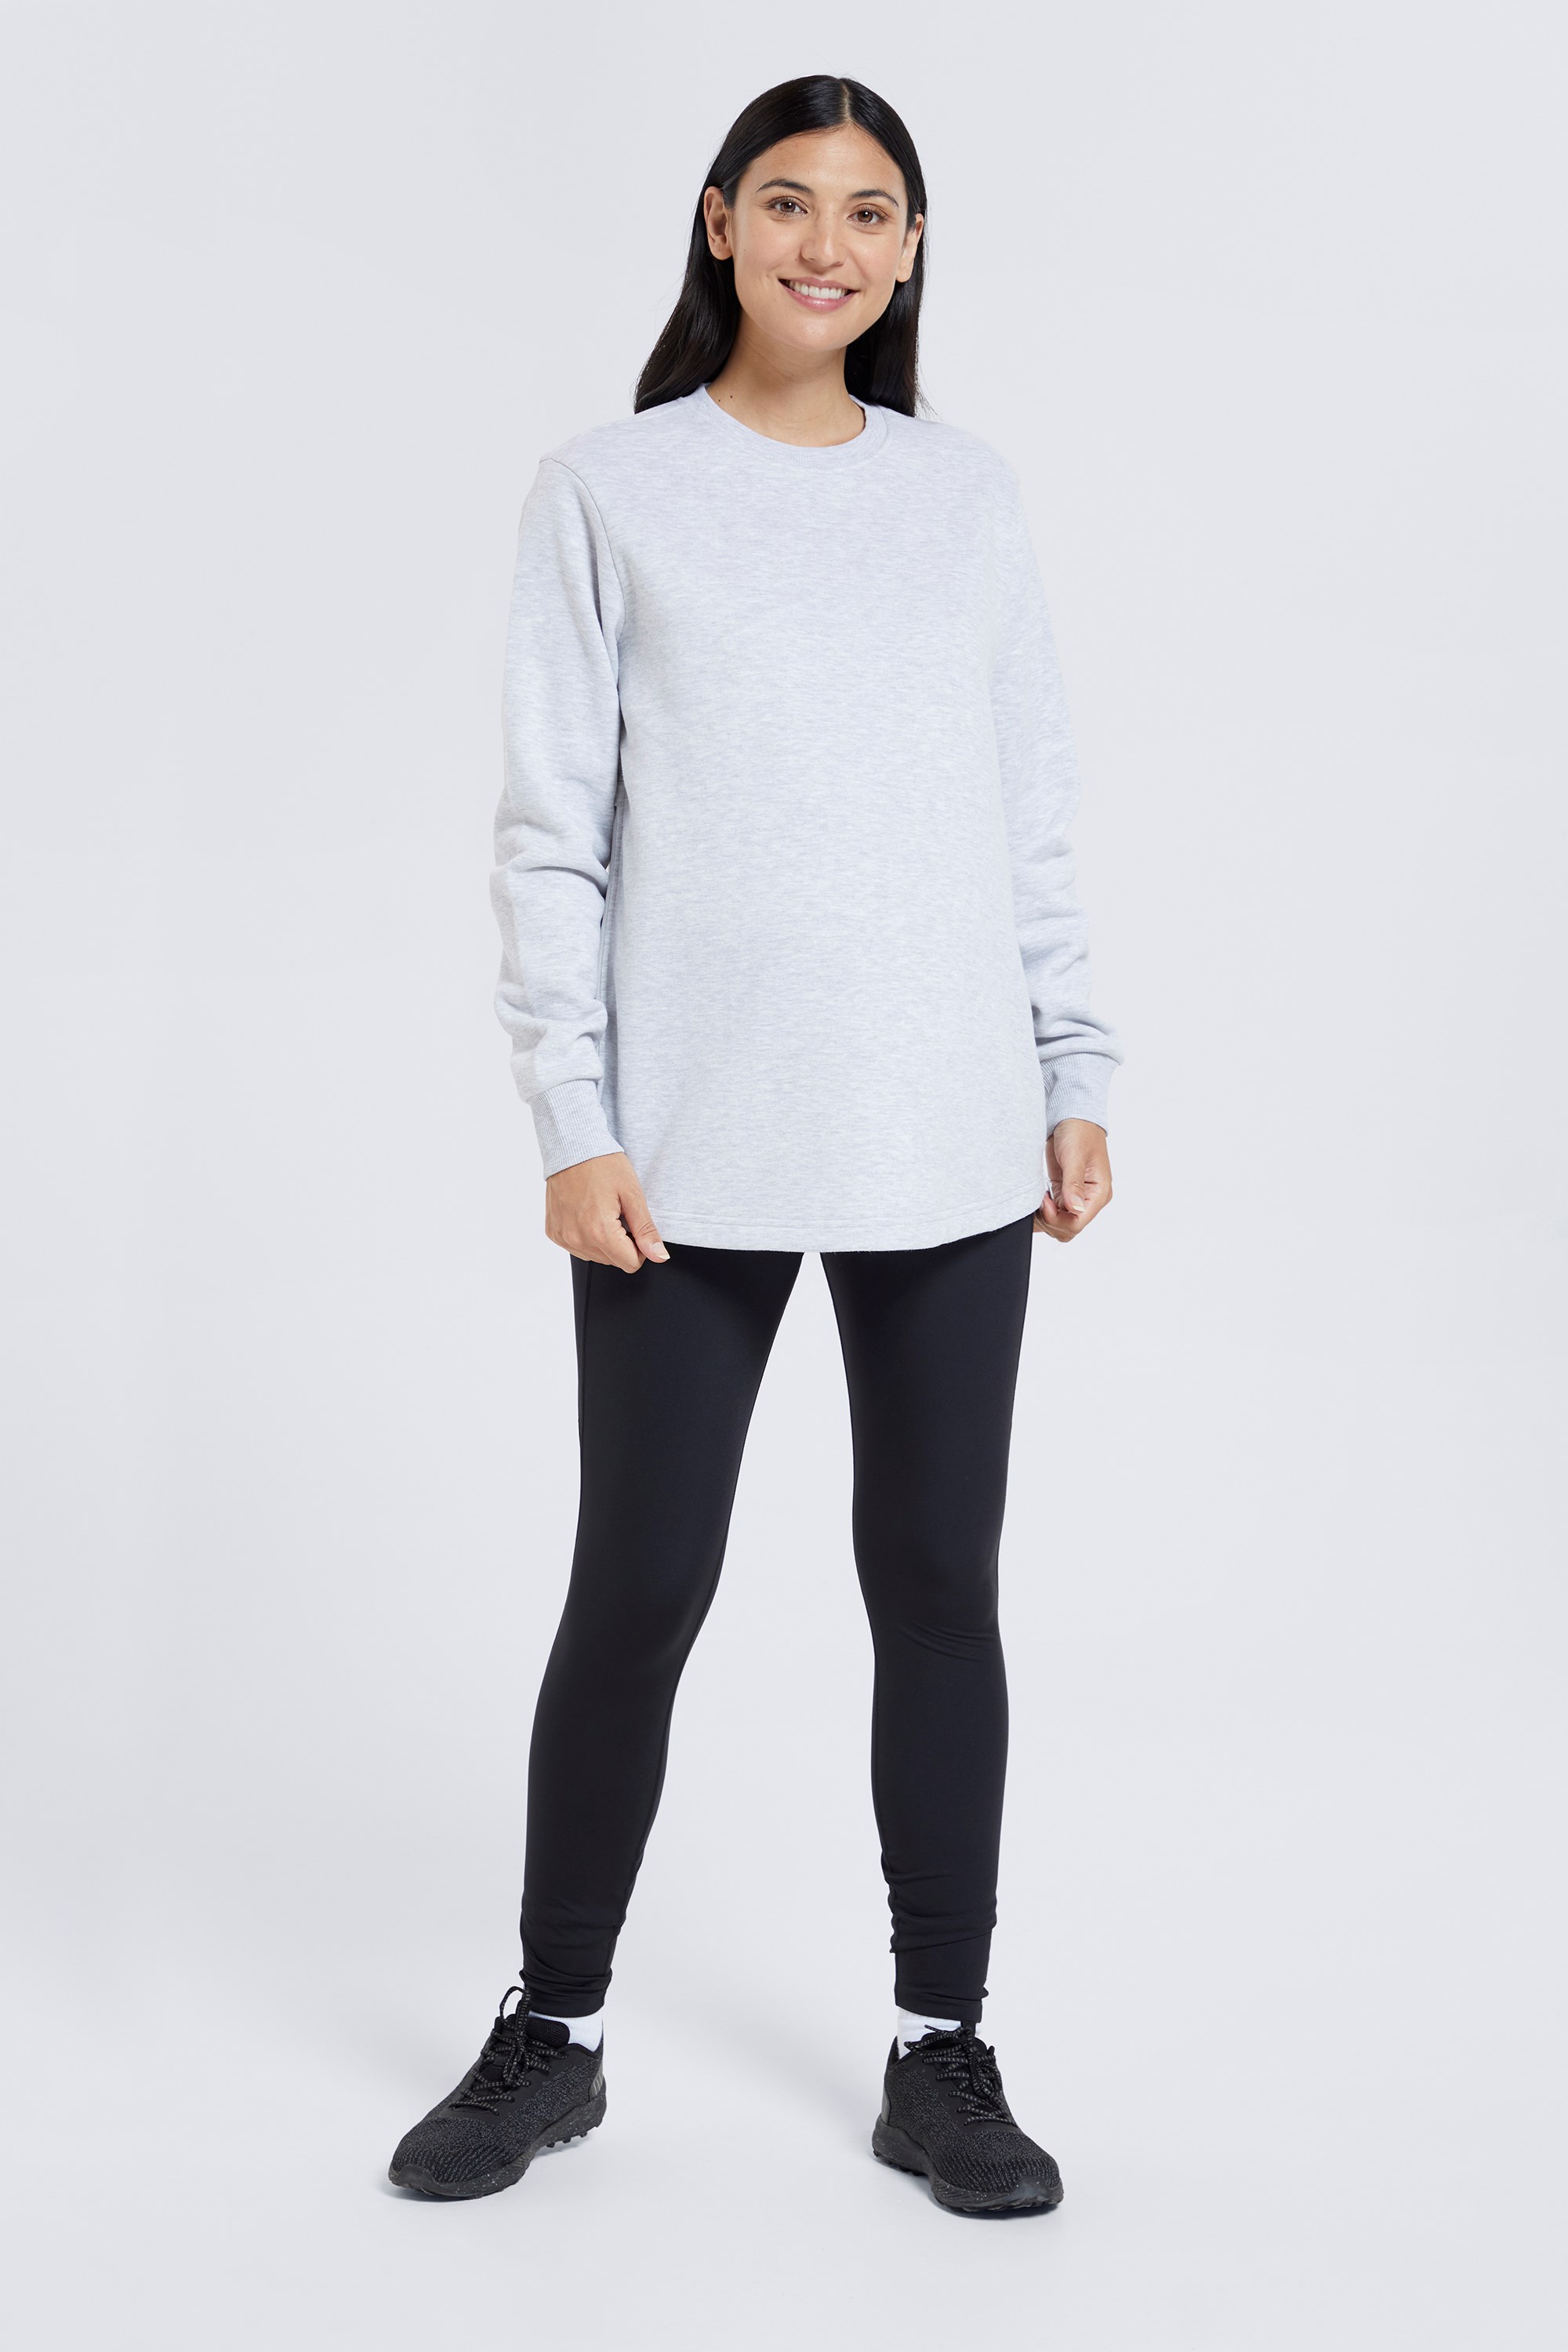 Zircon Maternity Side-zip Sweatshirt - Grey